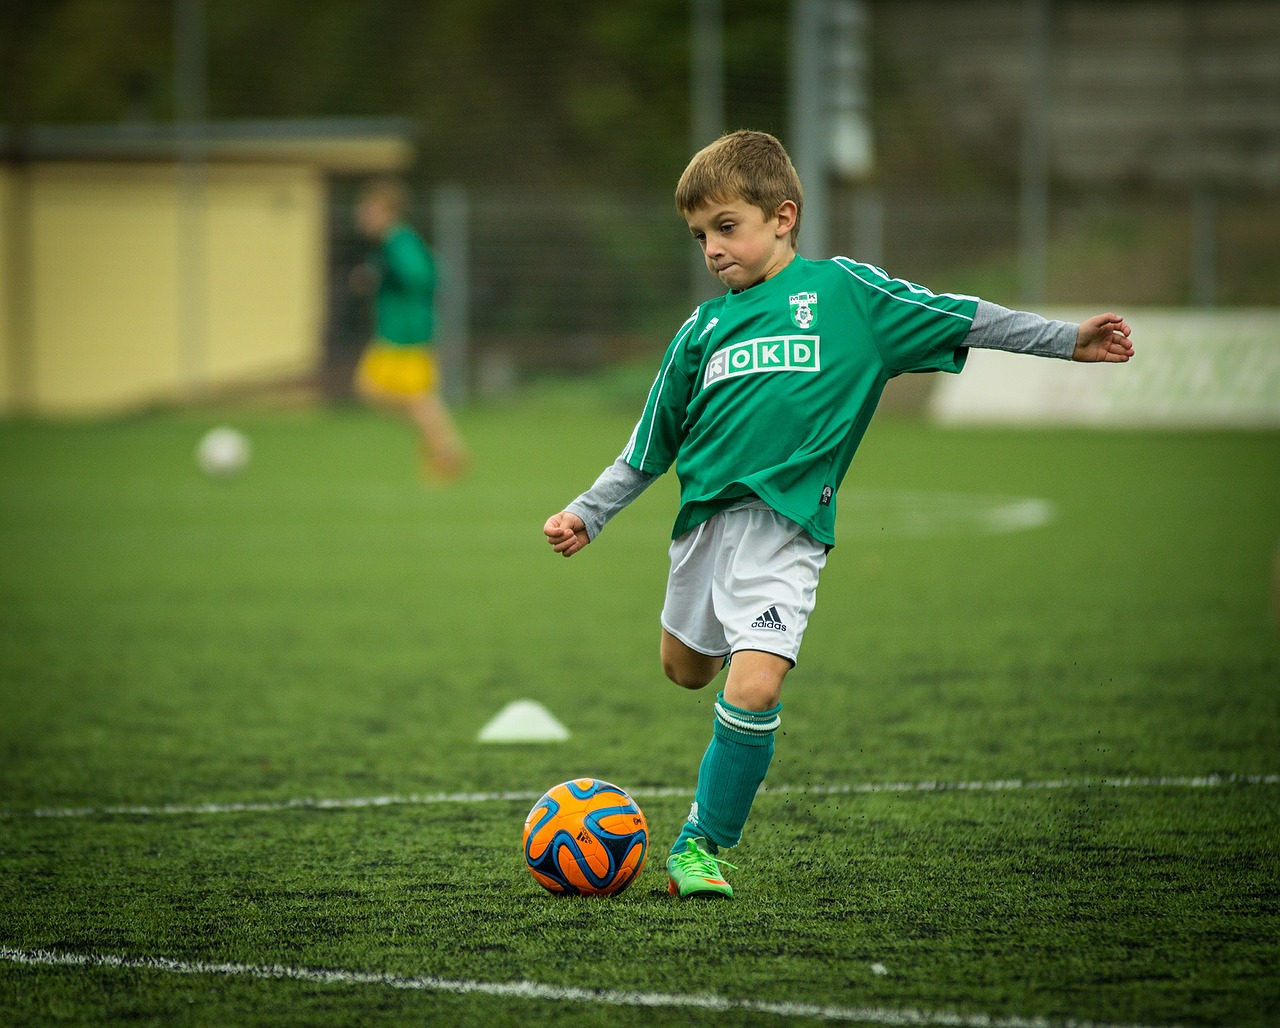 Jong voetbal talent | stichting topprestaties